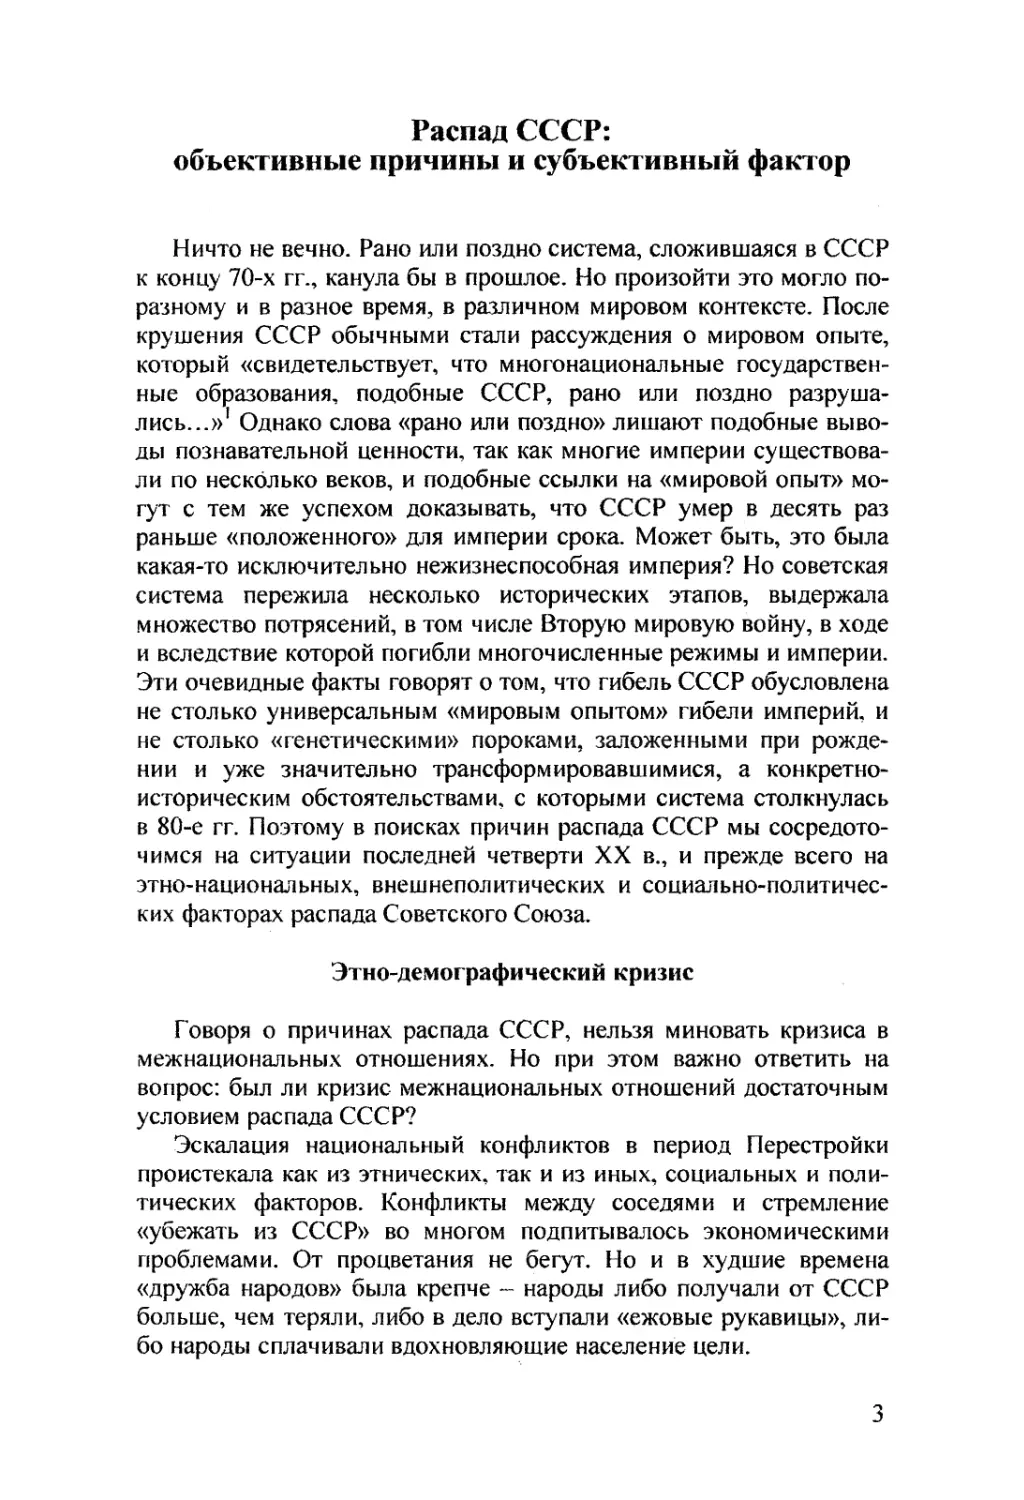 Шубин А.В. Распад СССР: объективные причины и субъективный фактор